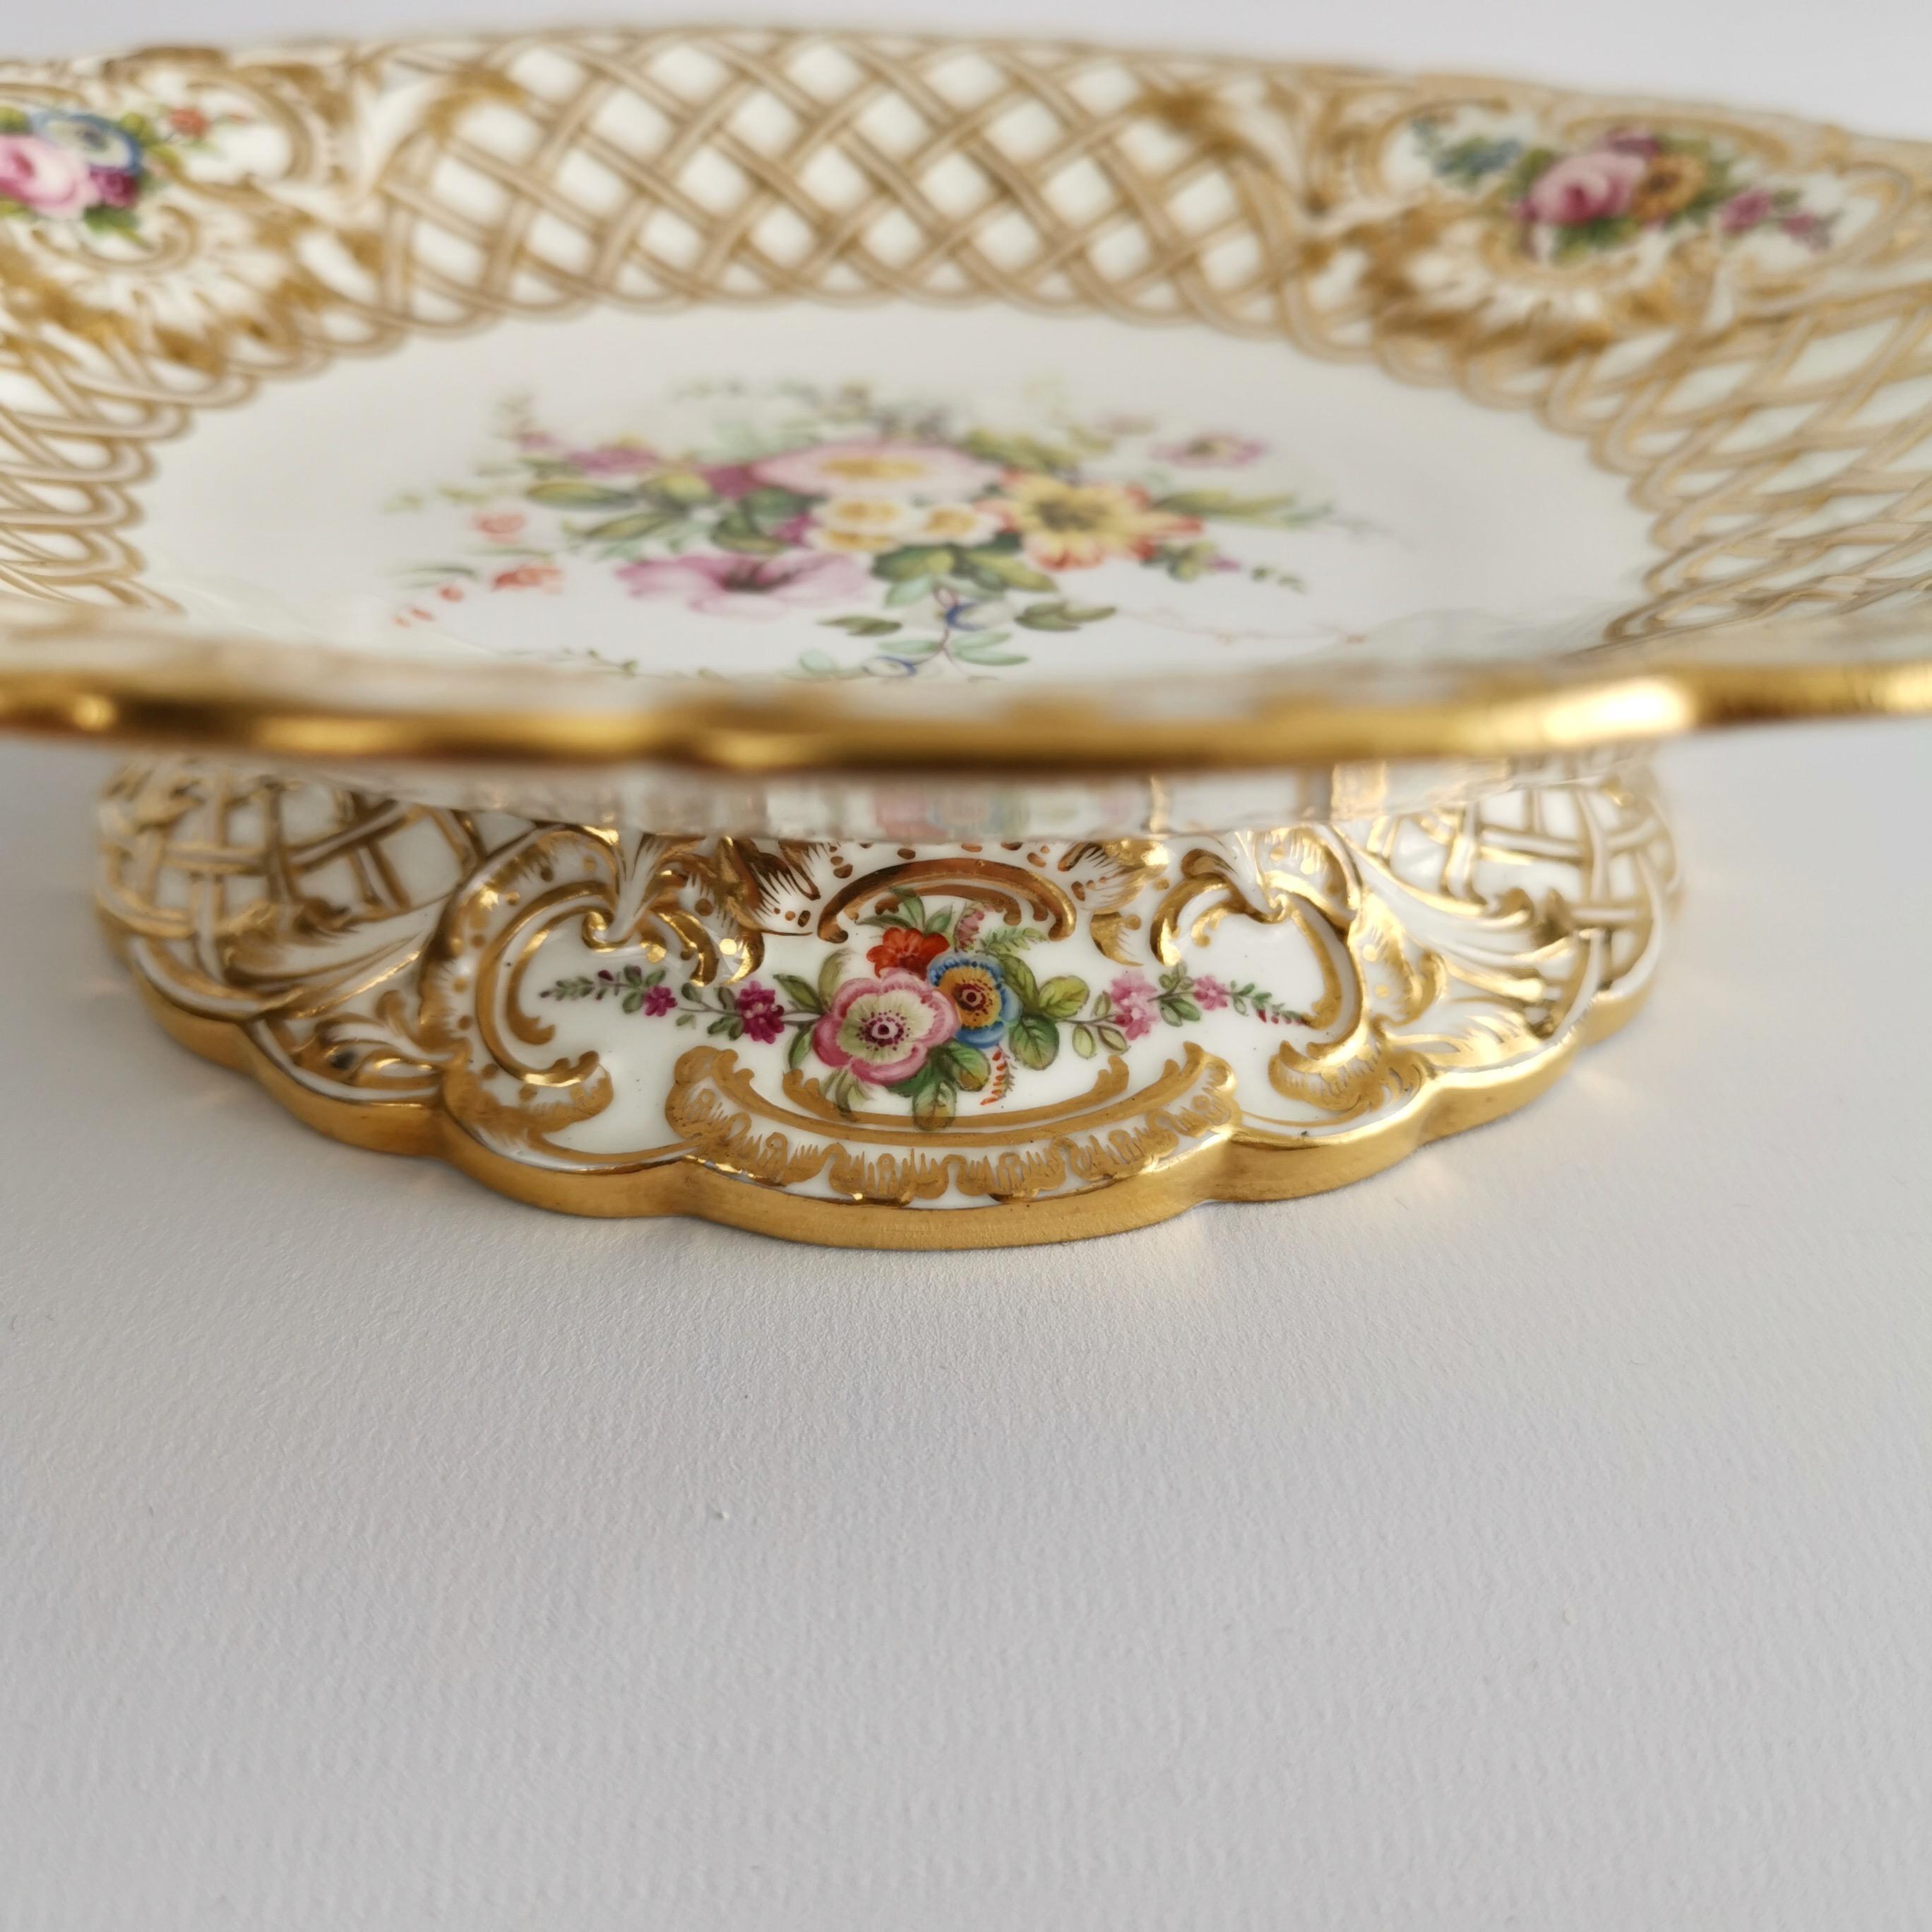 Minton Porcelain Dessert Service, White, Flowers J. Bancroft, Victorian, 1841 11